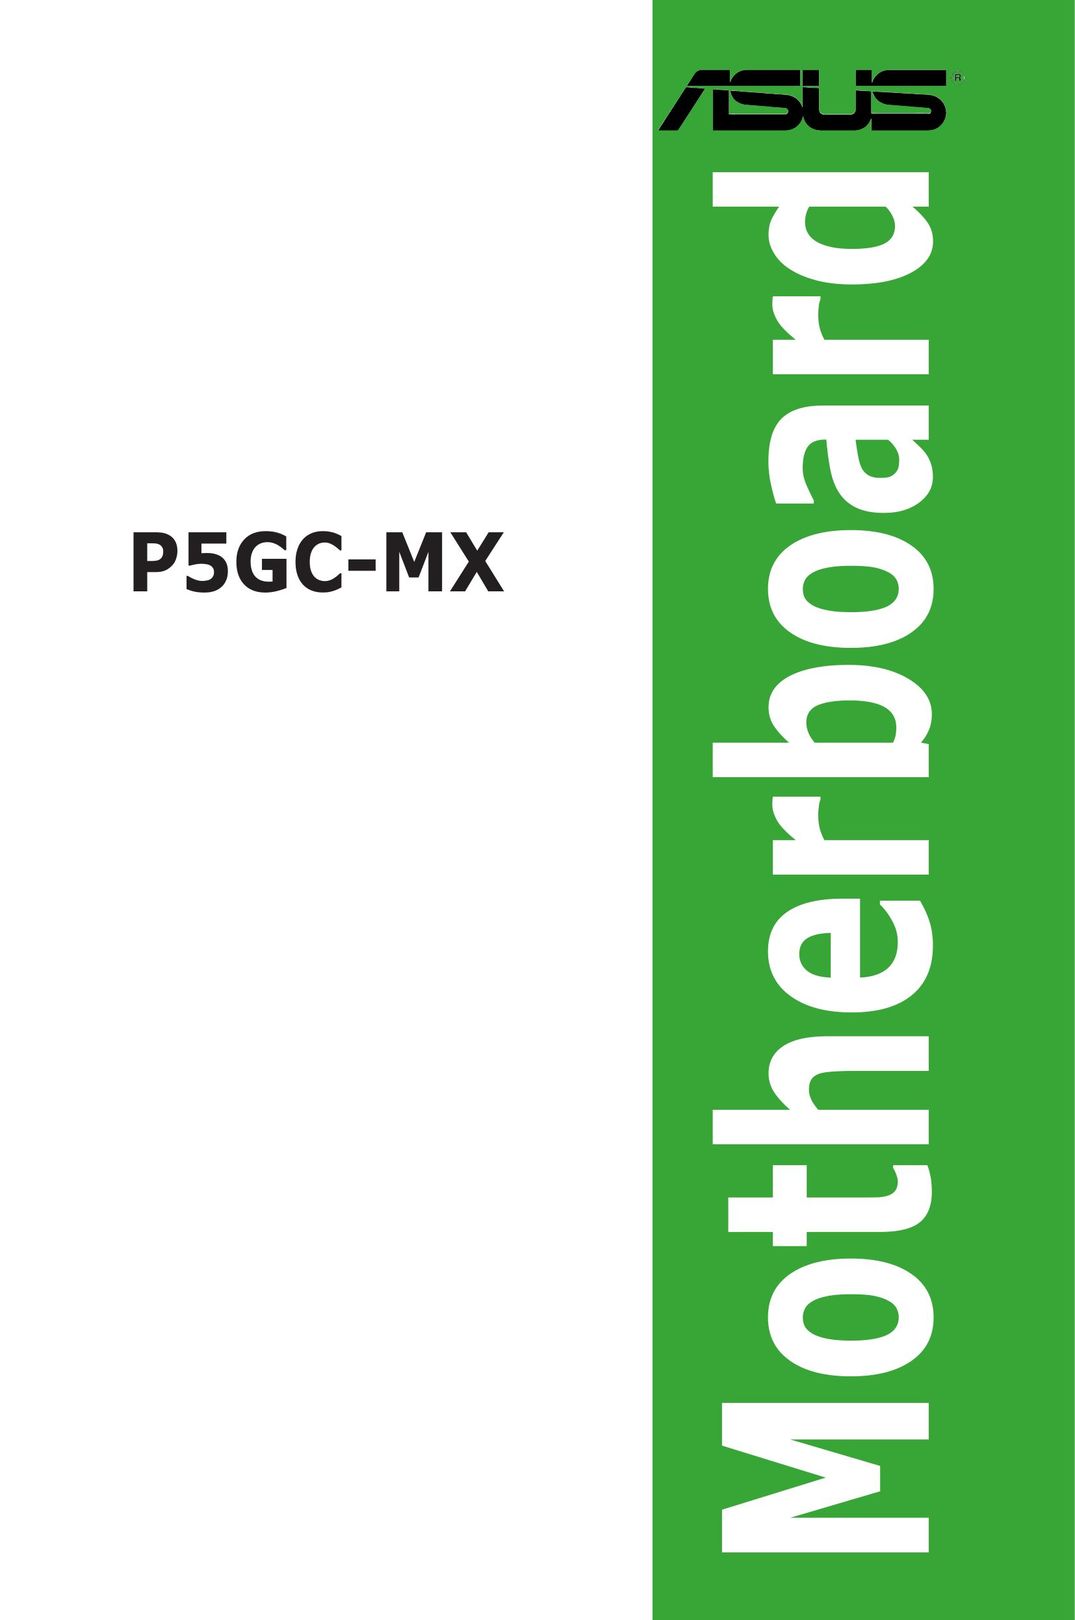 Asus P5GC-MX Network Card User Manual